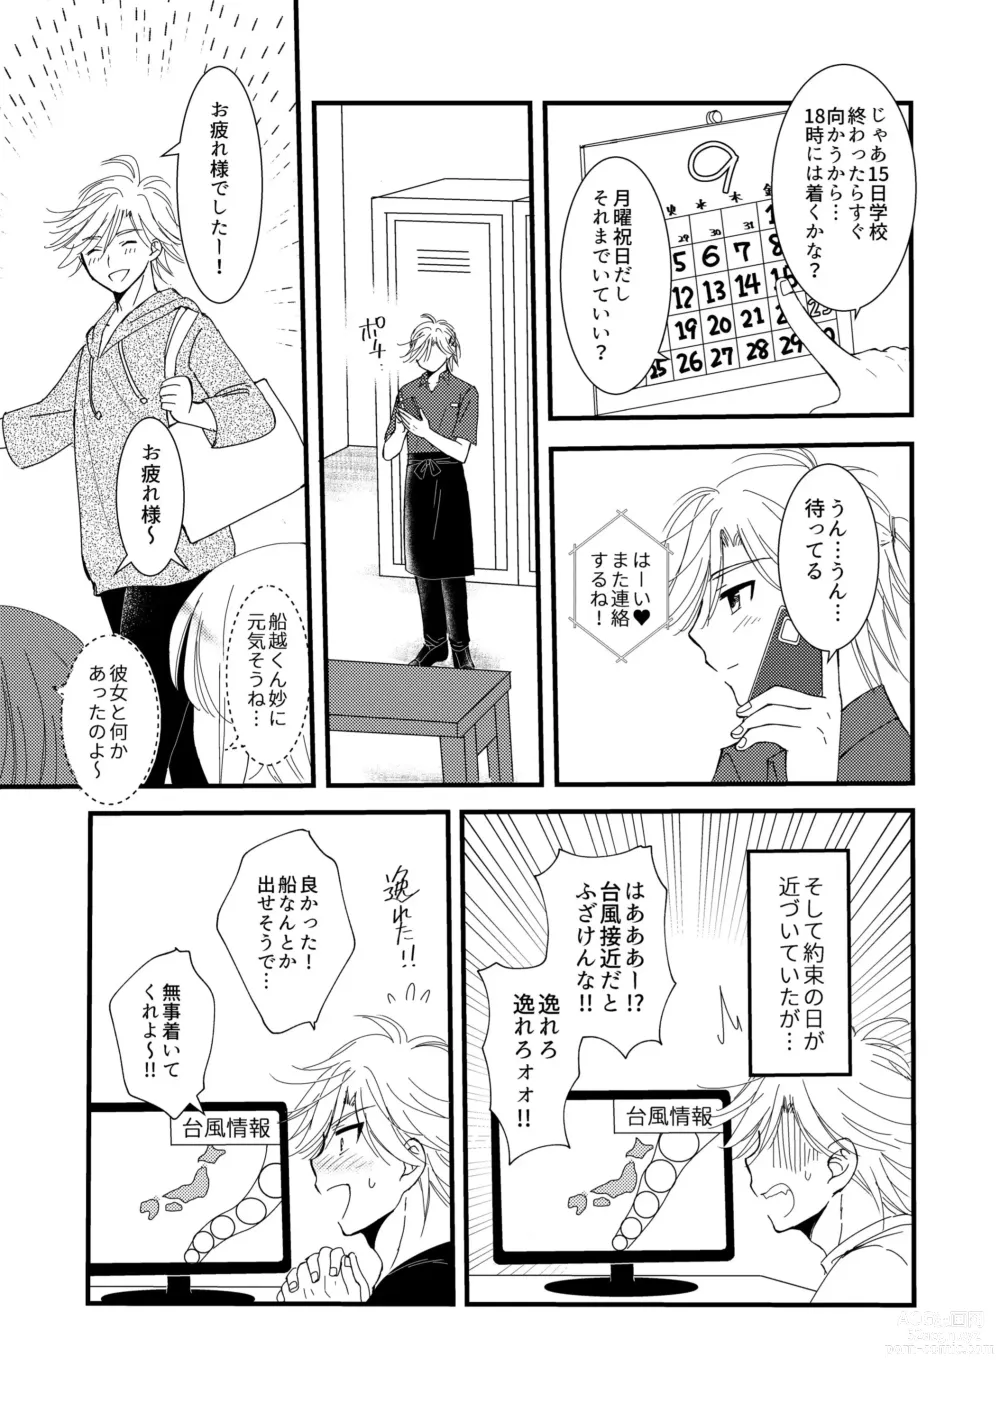 Page 57 of doujinshi Oitekita Umi